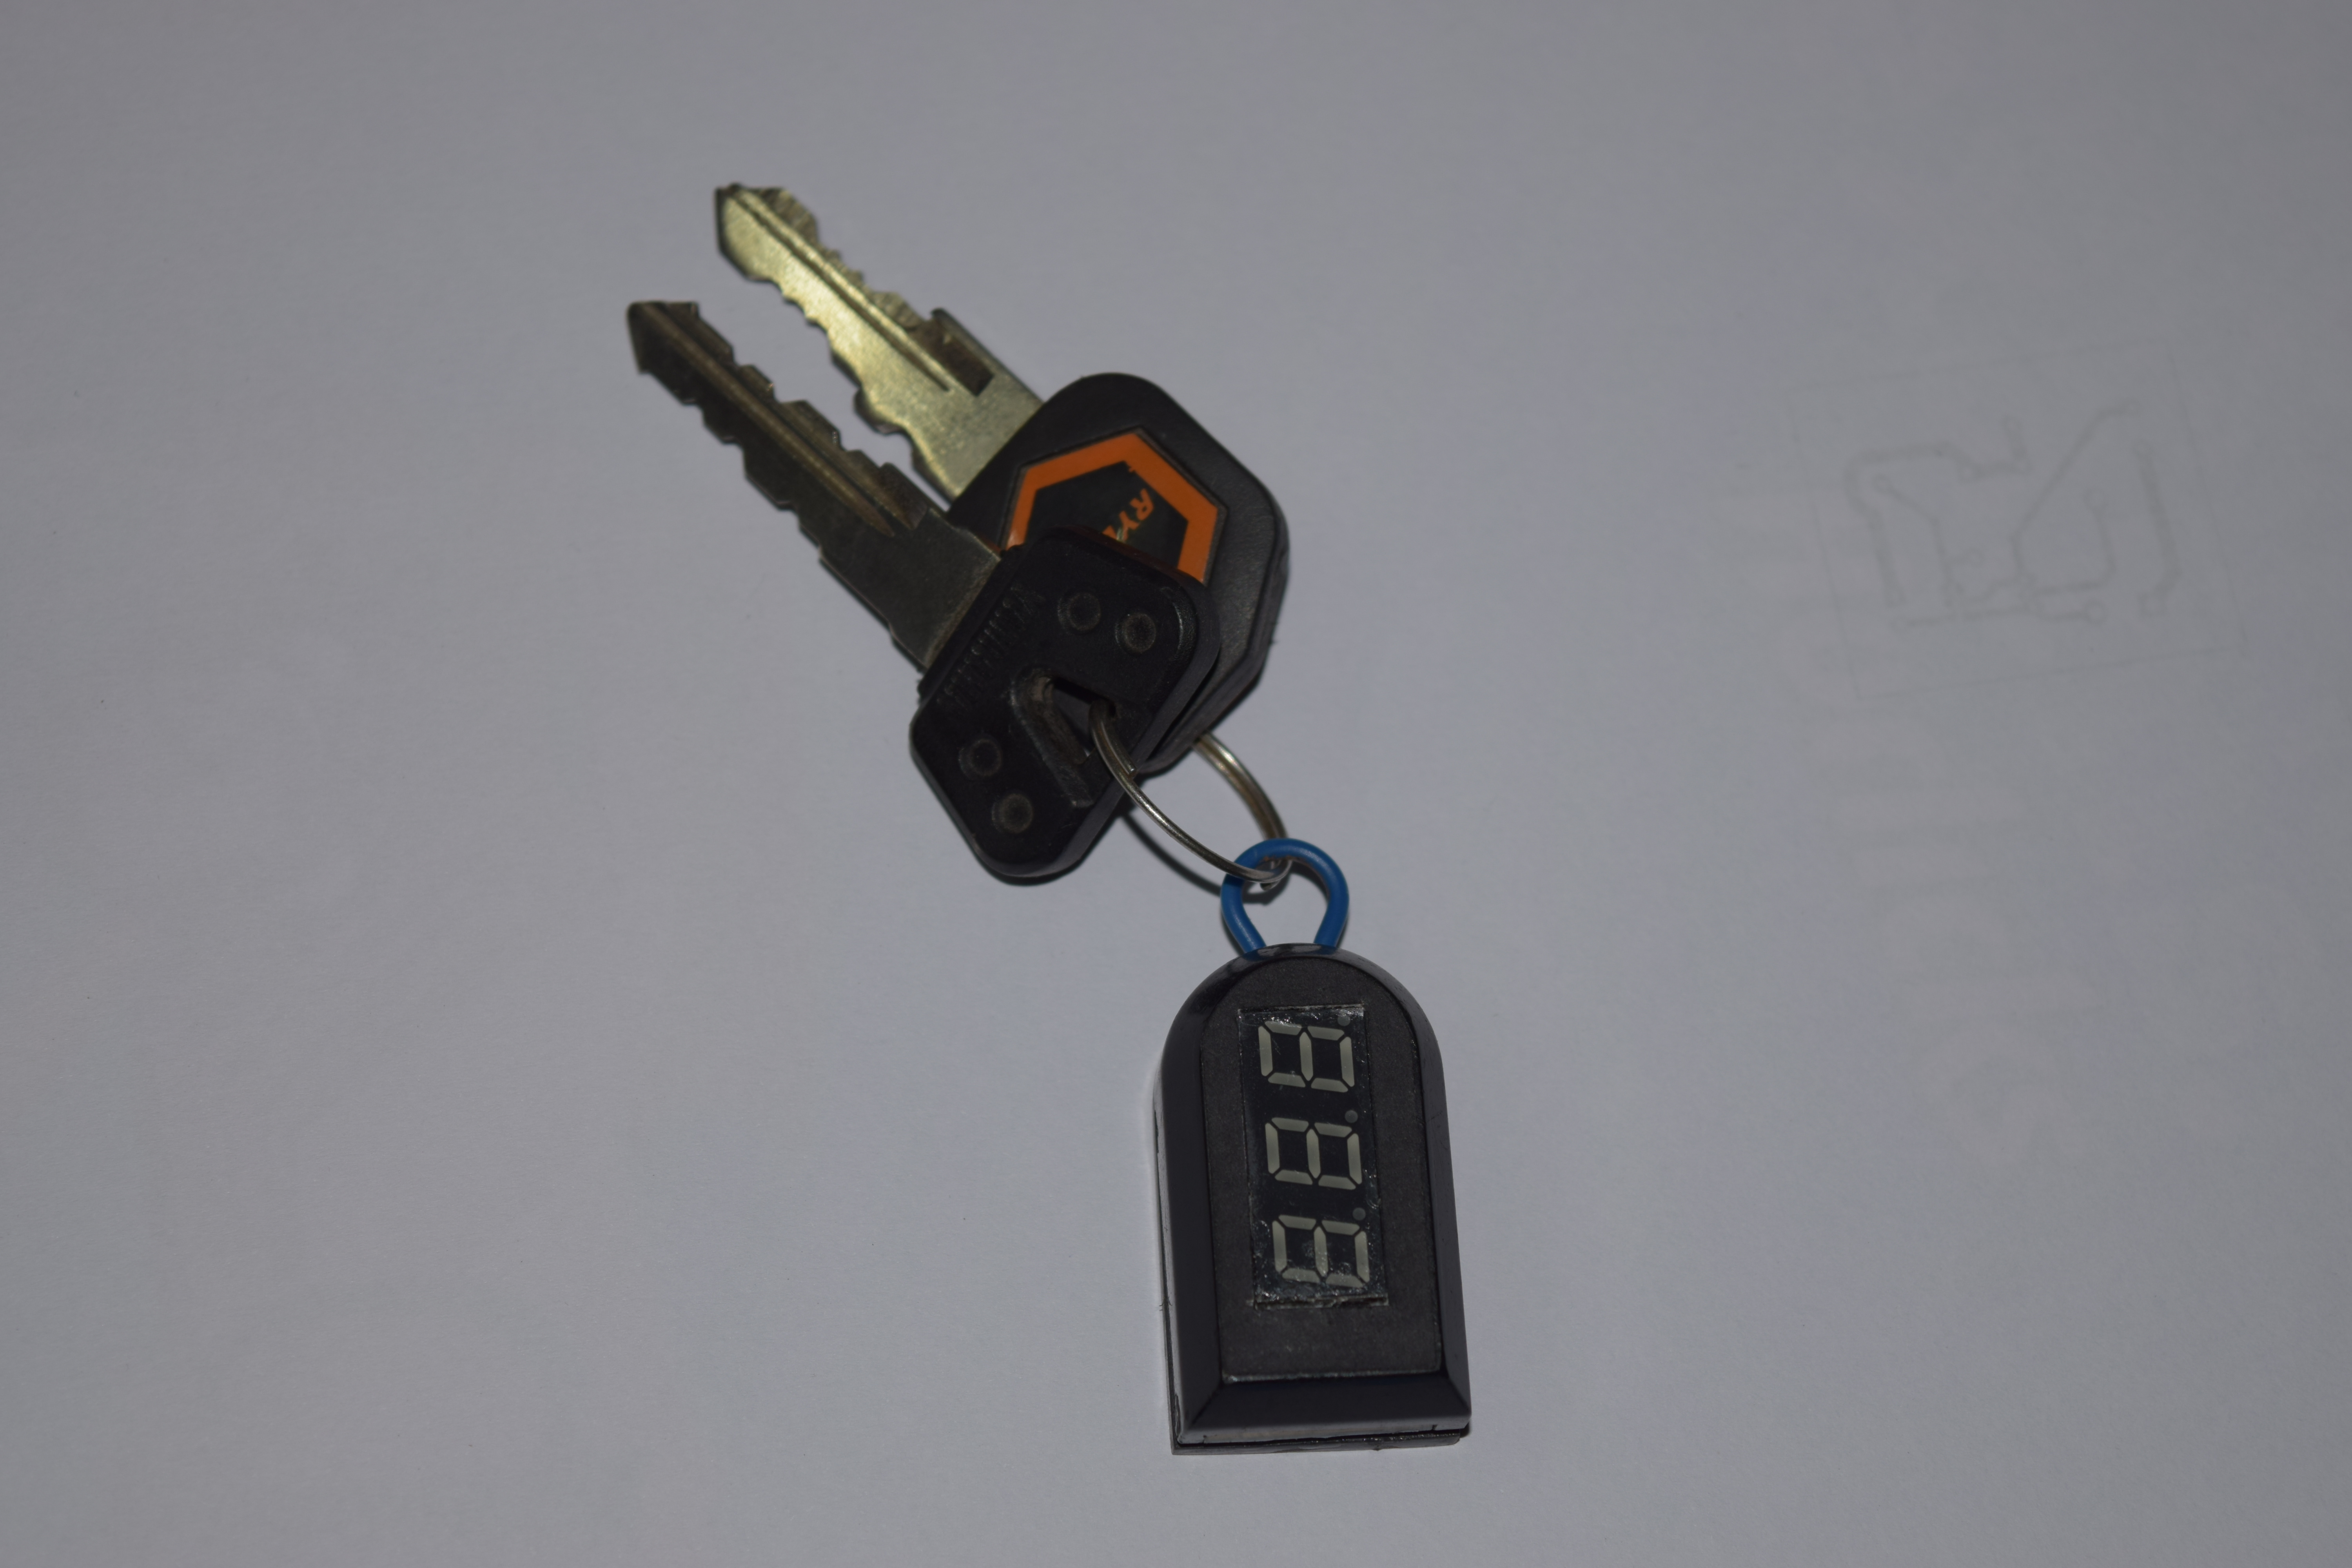 Keychain Voltmeter